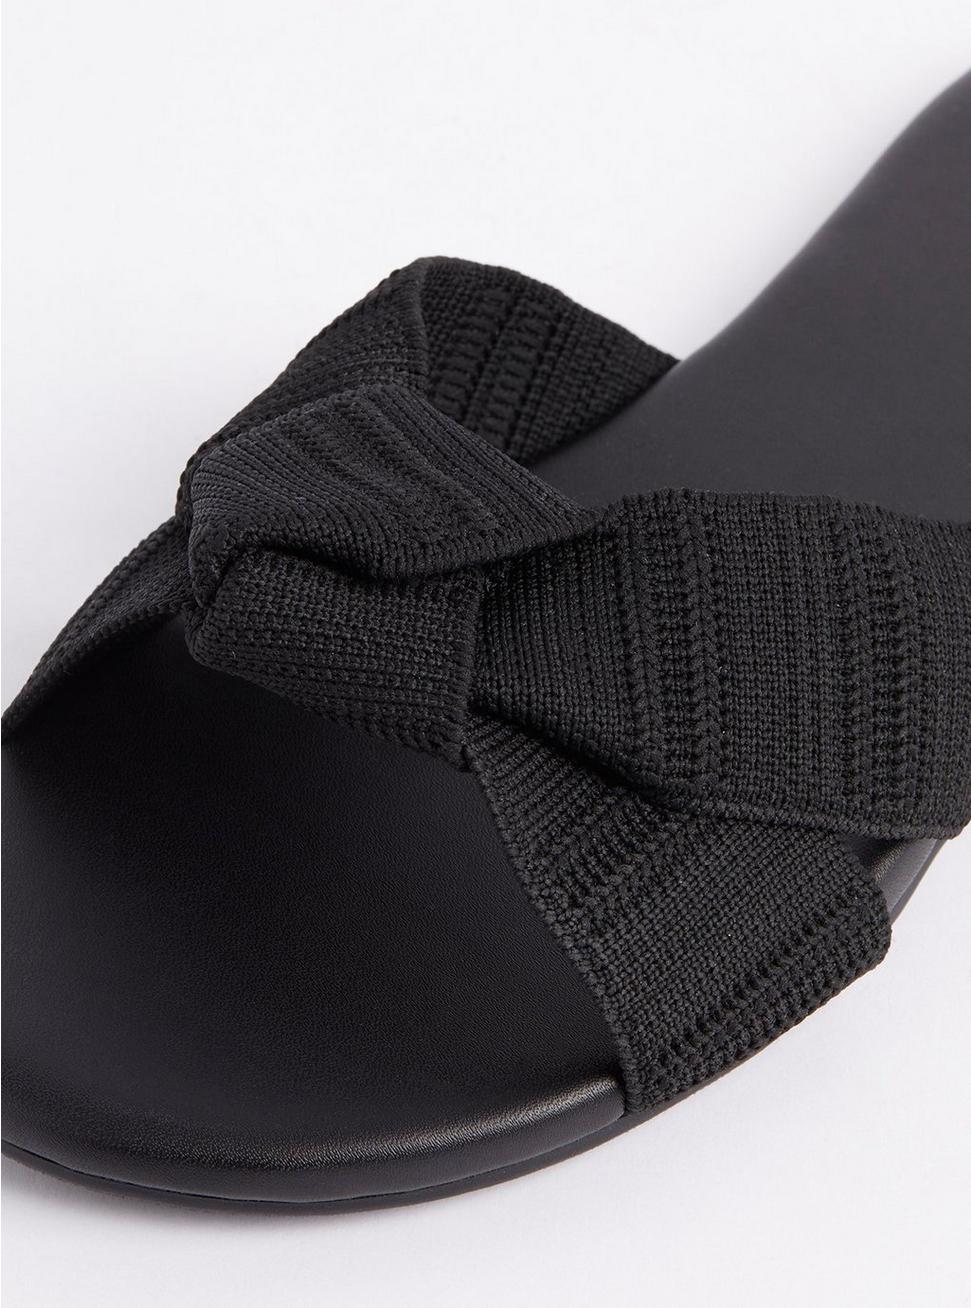 Plus Size Stretch Twist Bow Slide Sandal (WW), BLACK, alternate